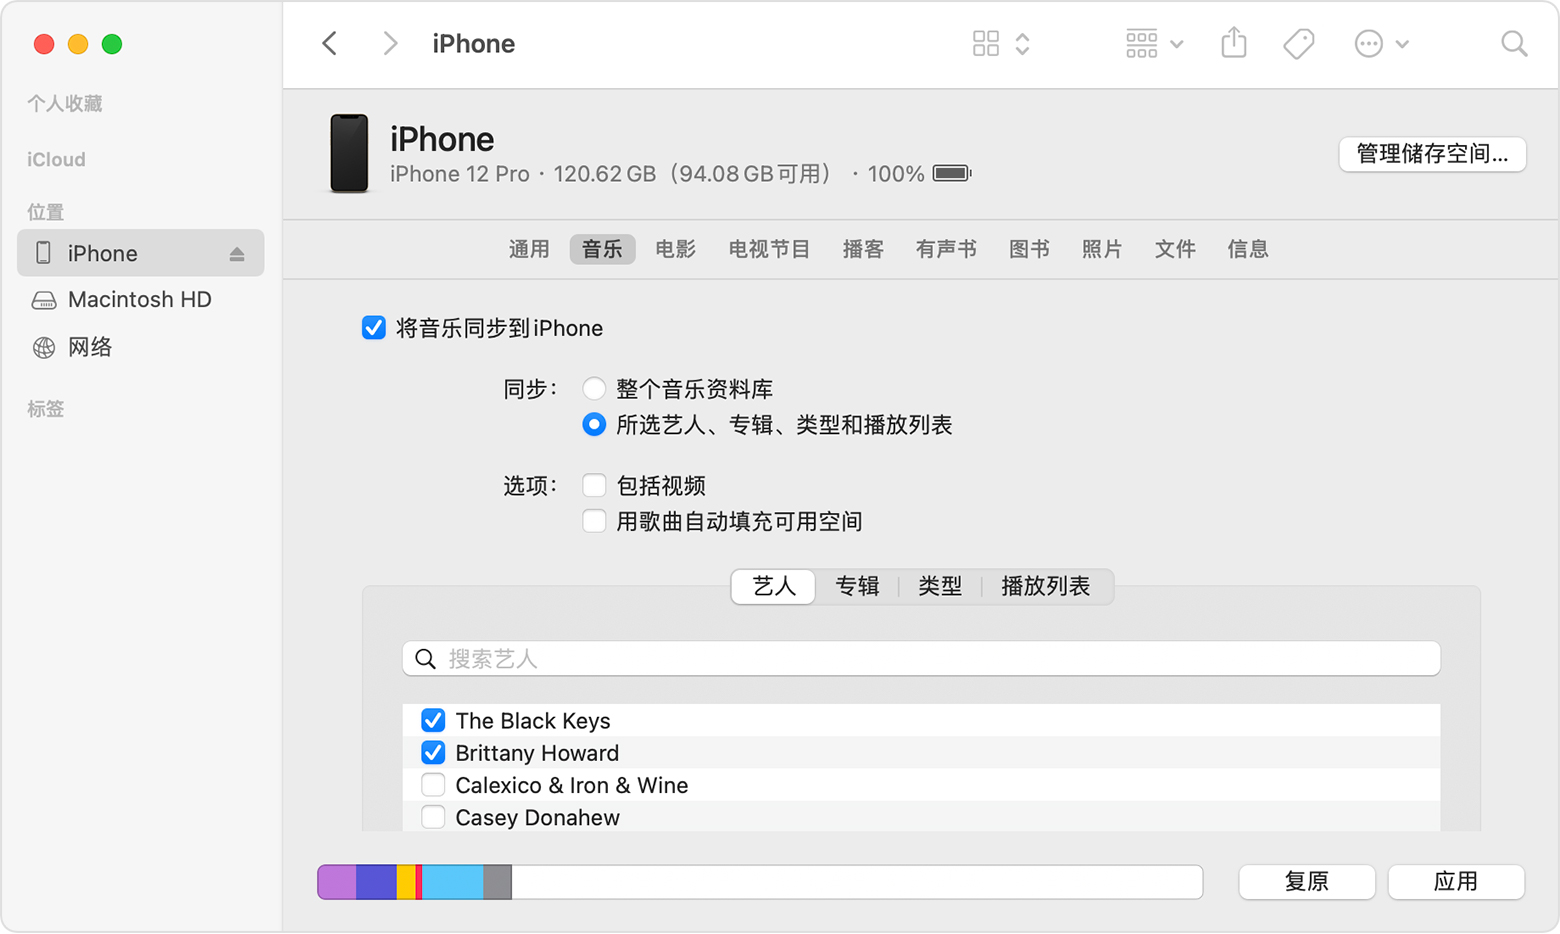 “访达”窗口显示了用于与所连 iPhone 同步音乐的选项